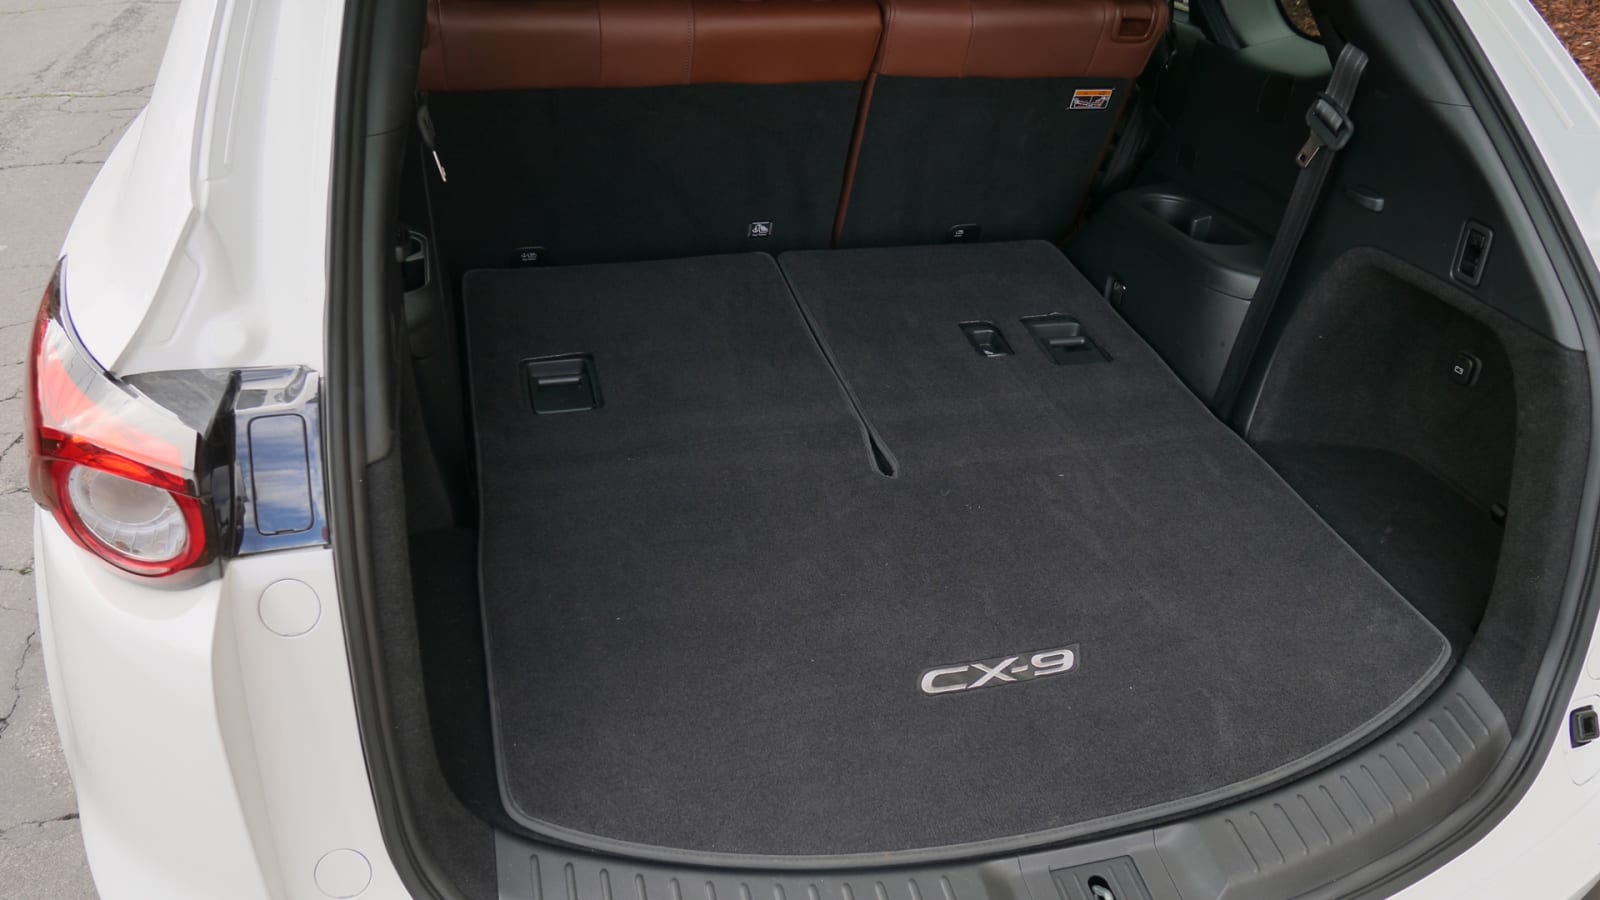 Mazda Cx 9 Interior Dimensions